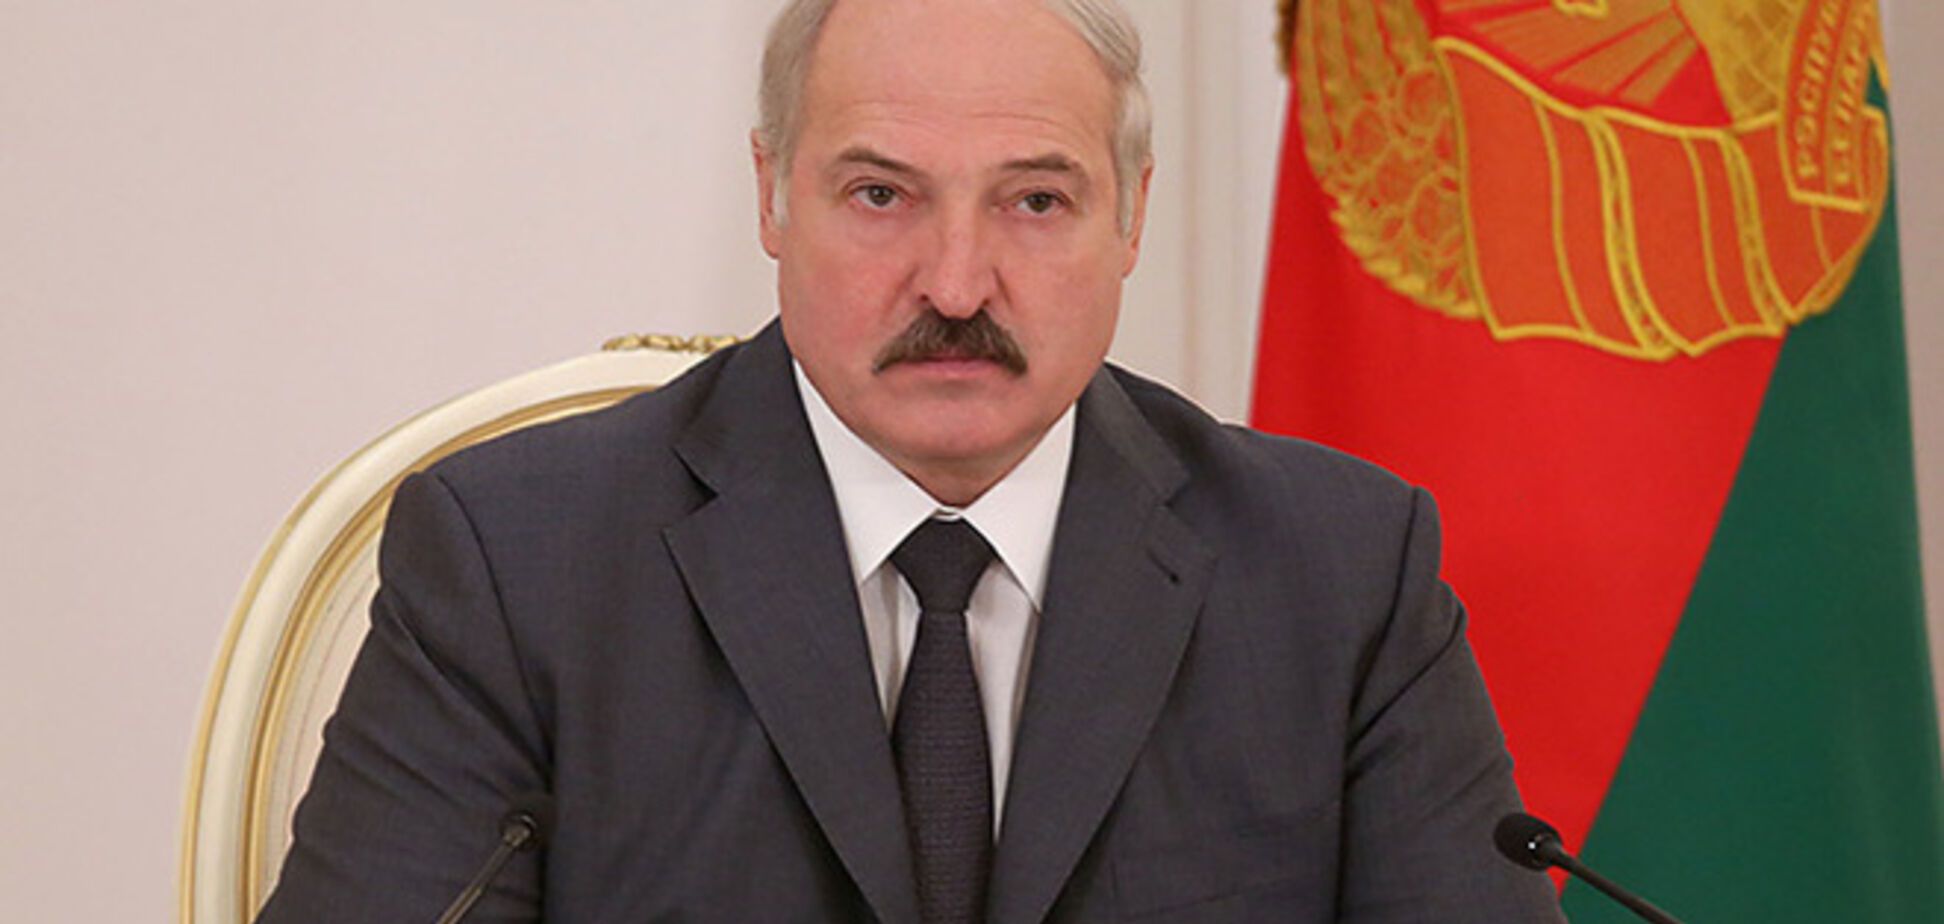 Беларусь готова принять беженцев из Украины, если они будут 'нормально трудиться' - Лукашенко